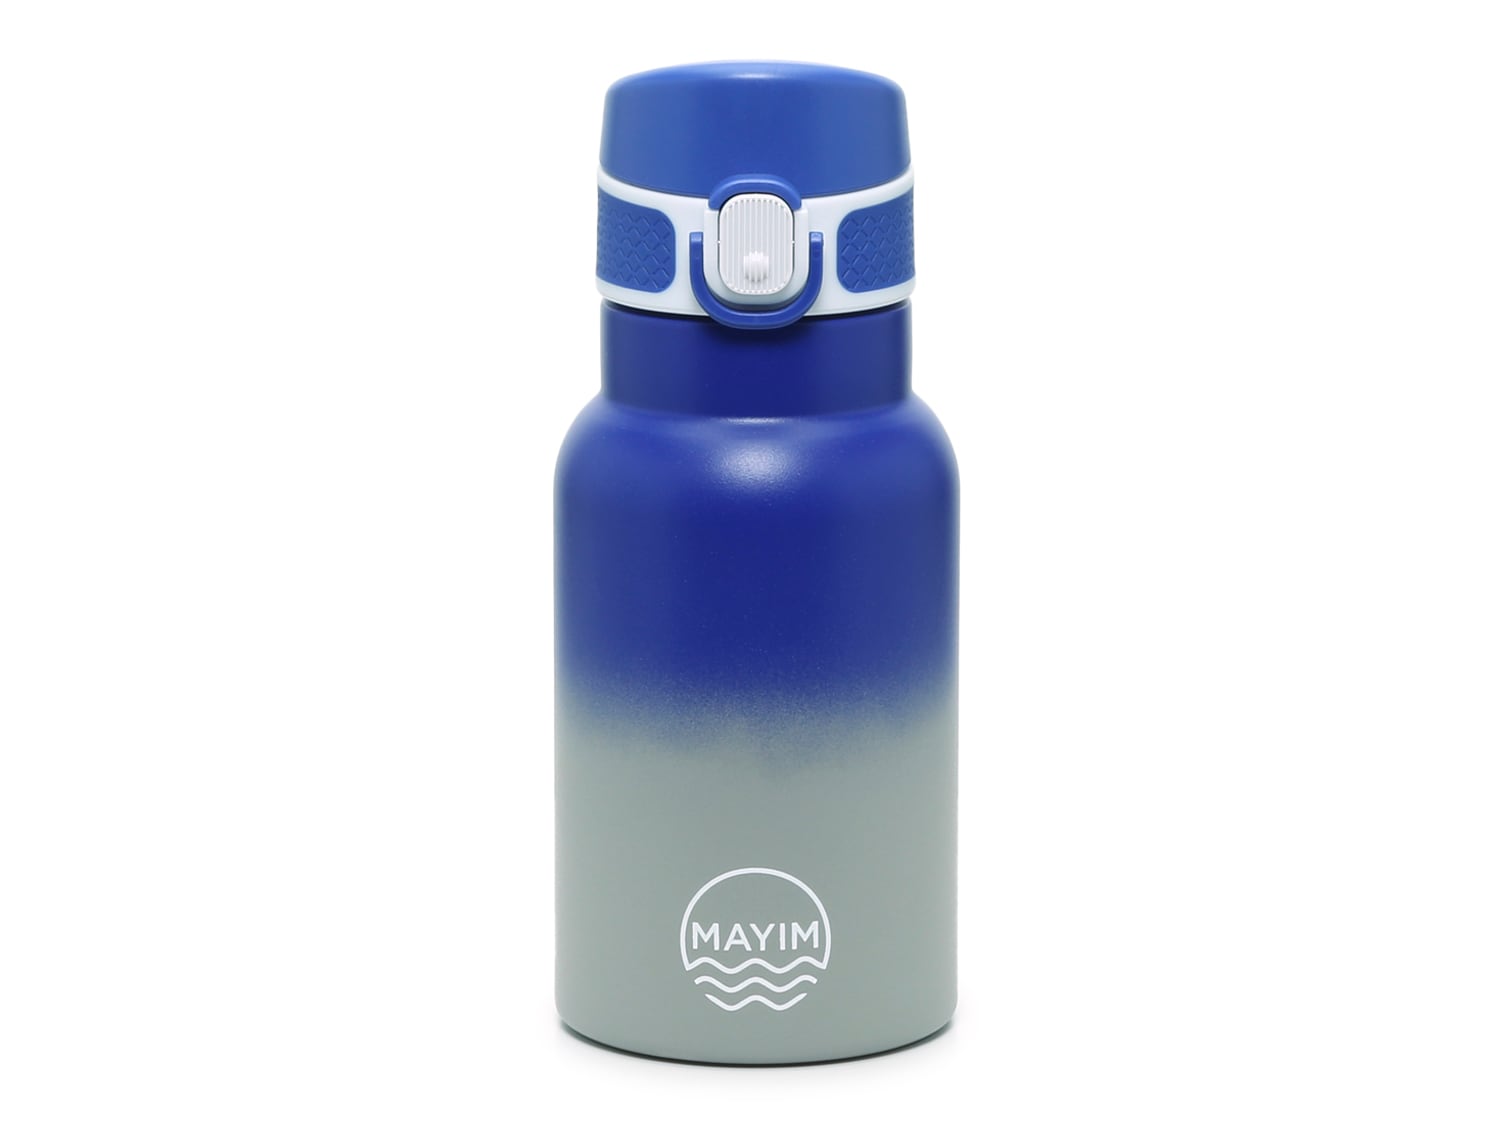 Mayim Neoprene Capsule Water Bottle with Dark Blue Sleeve, 2.2 L